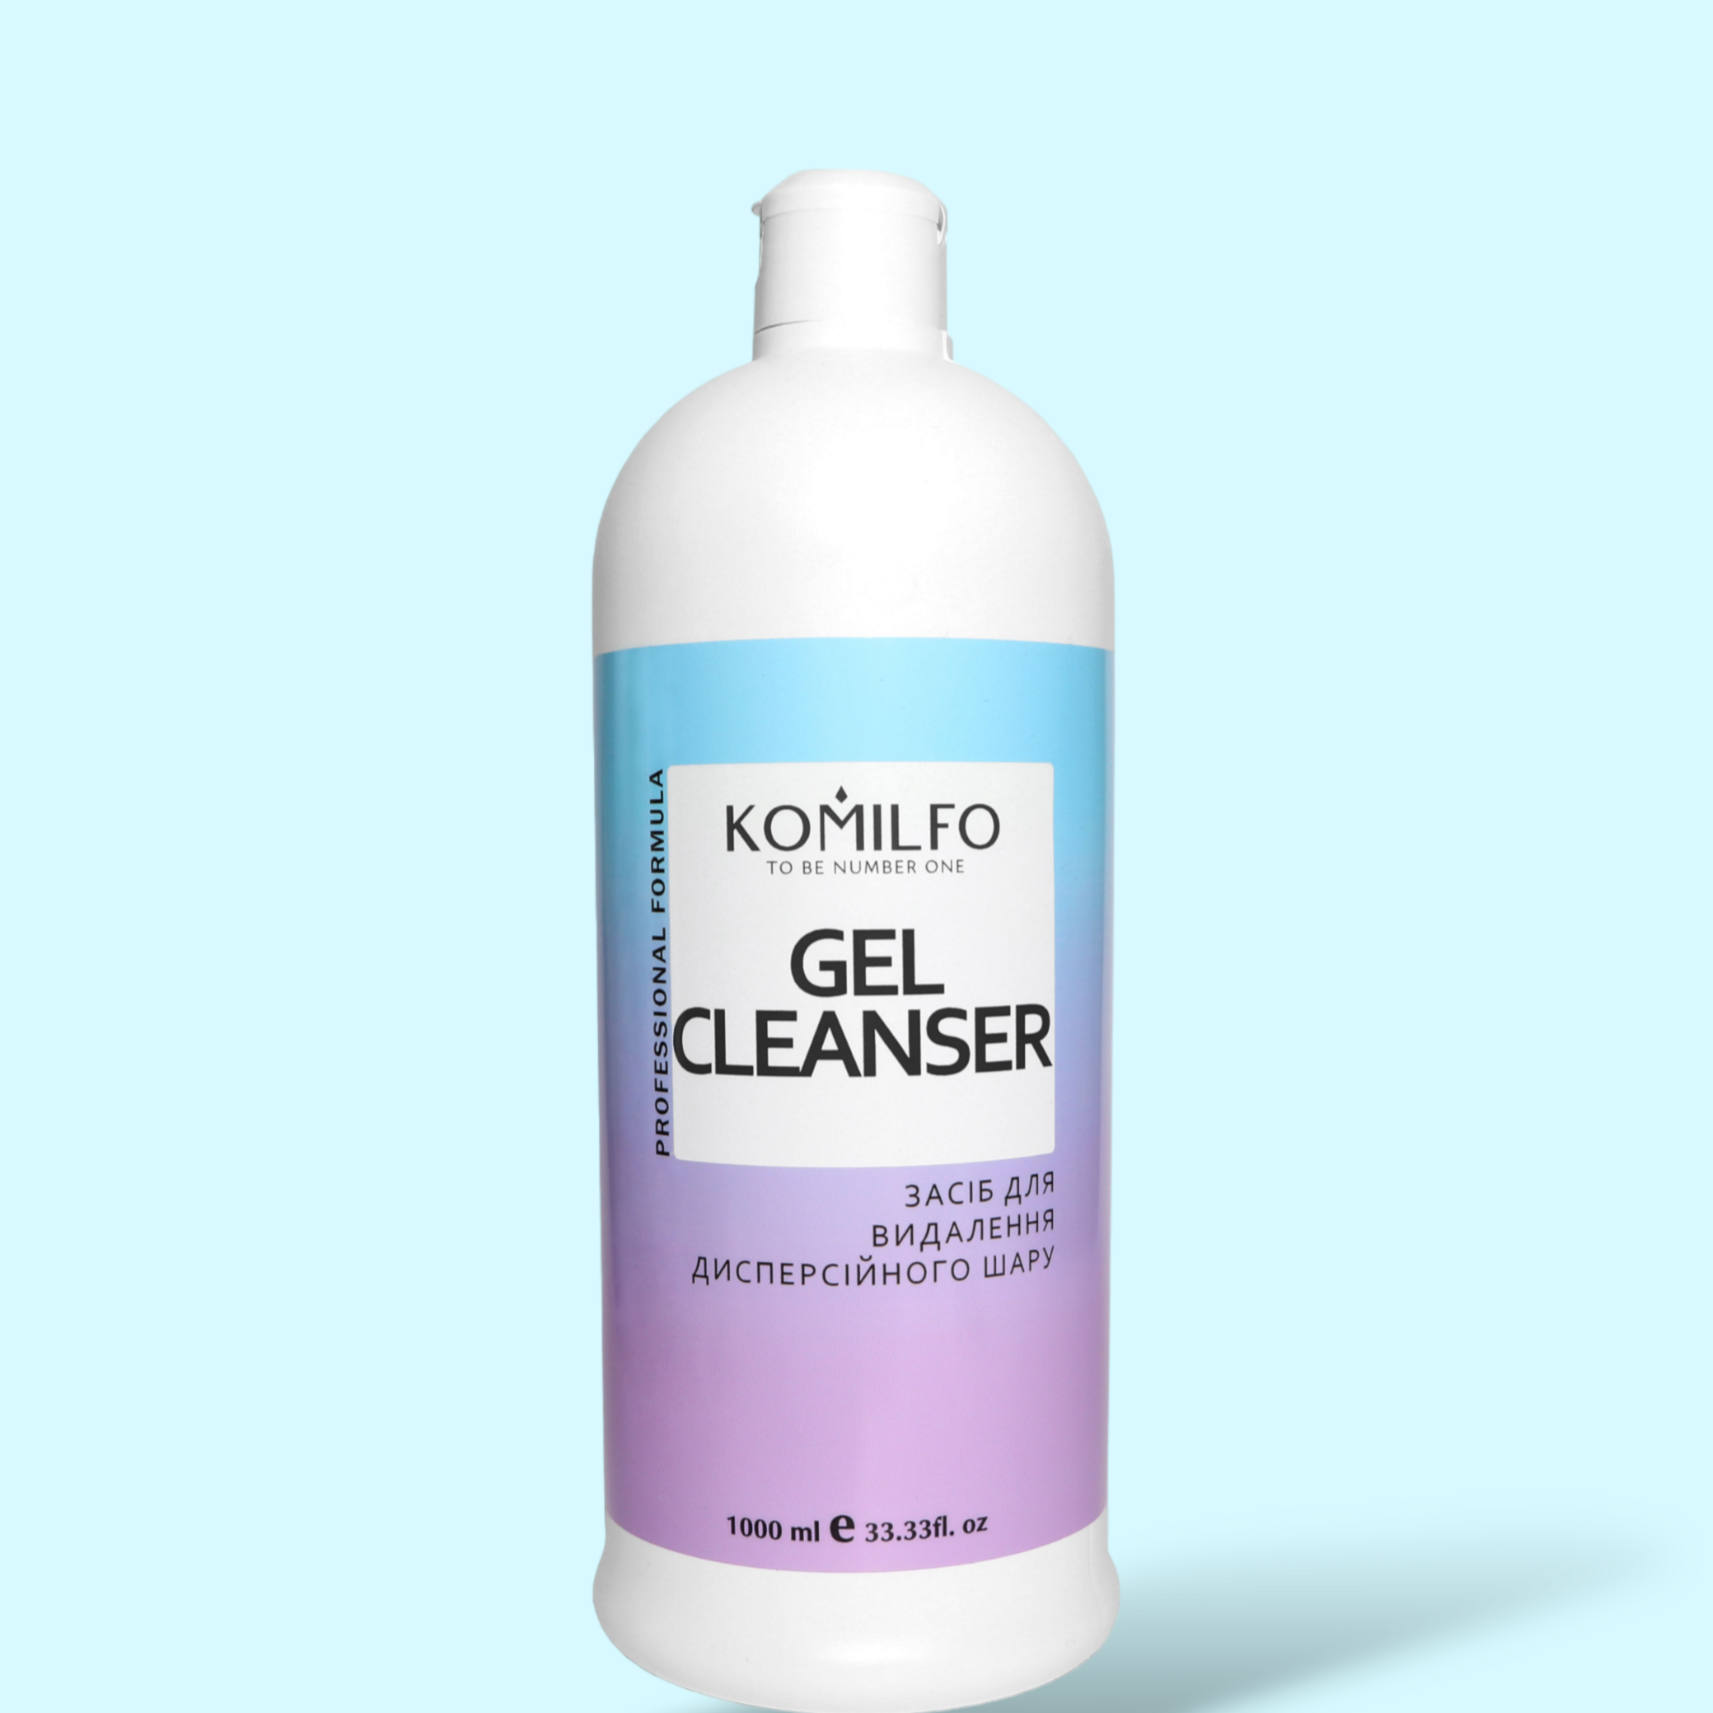 Komilfo Gel Cleanser - засіб для зняття липкого шару, 1000 мл